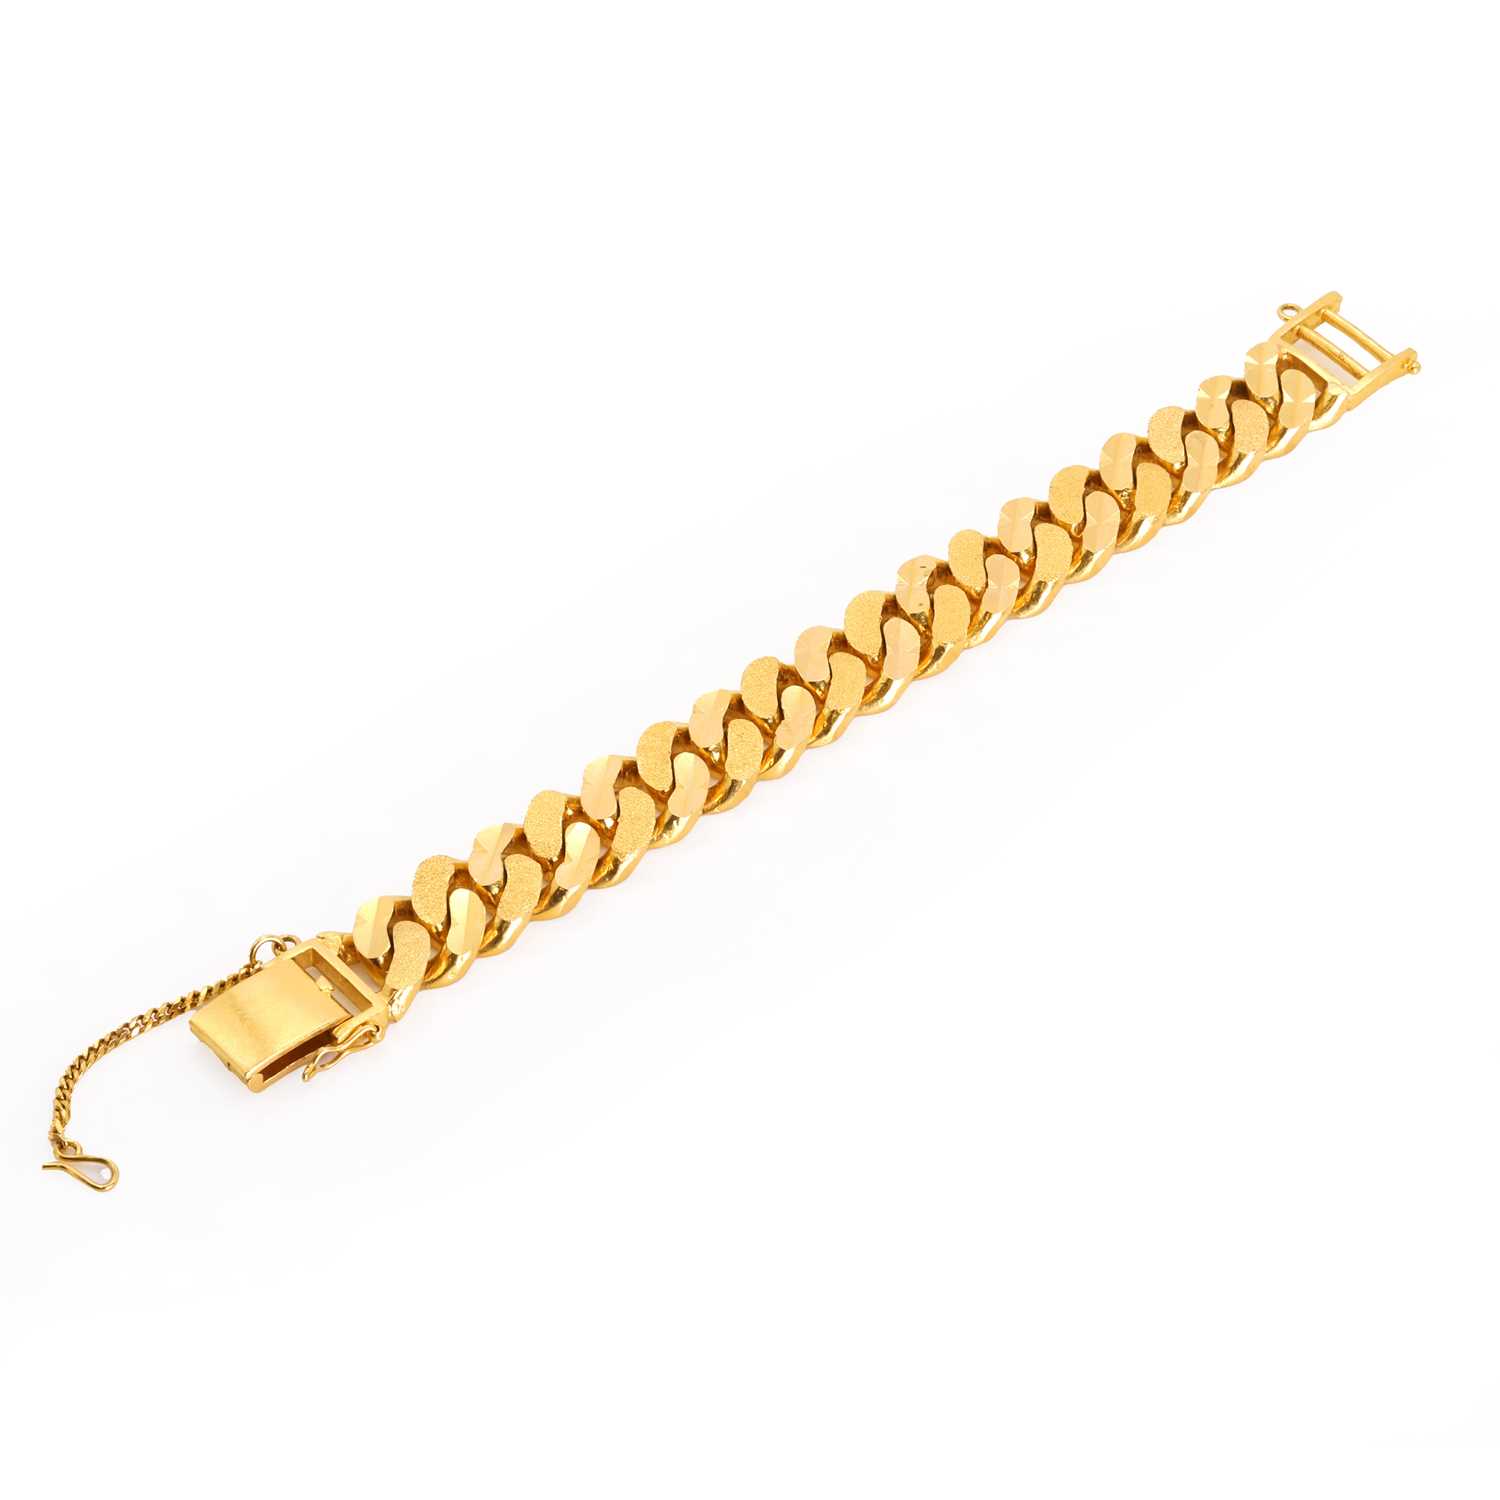 A solid curb link bracelet, - Image 2 of 2